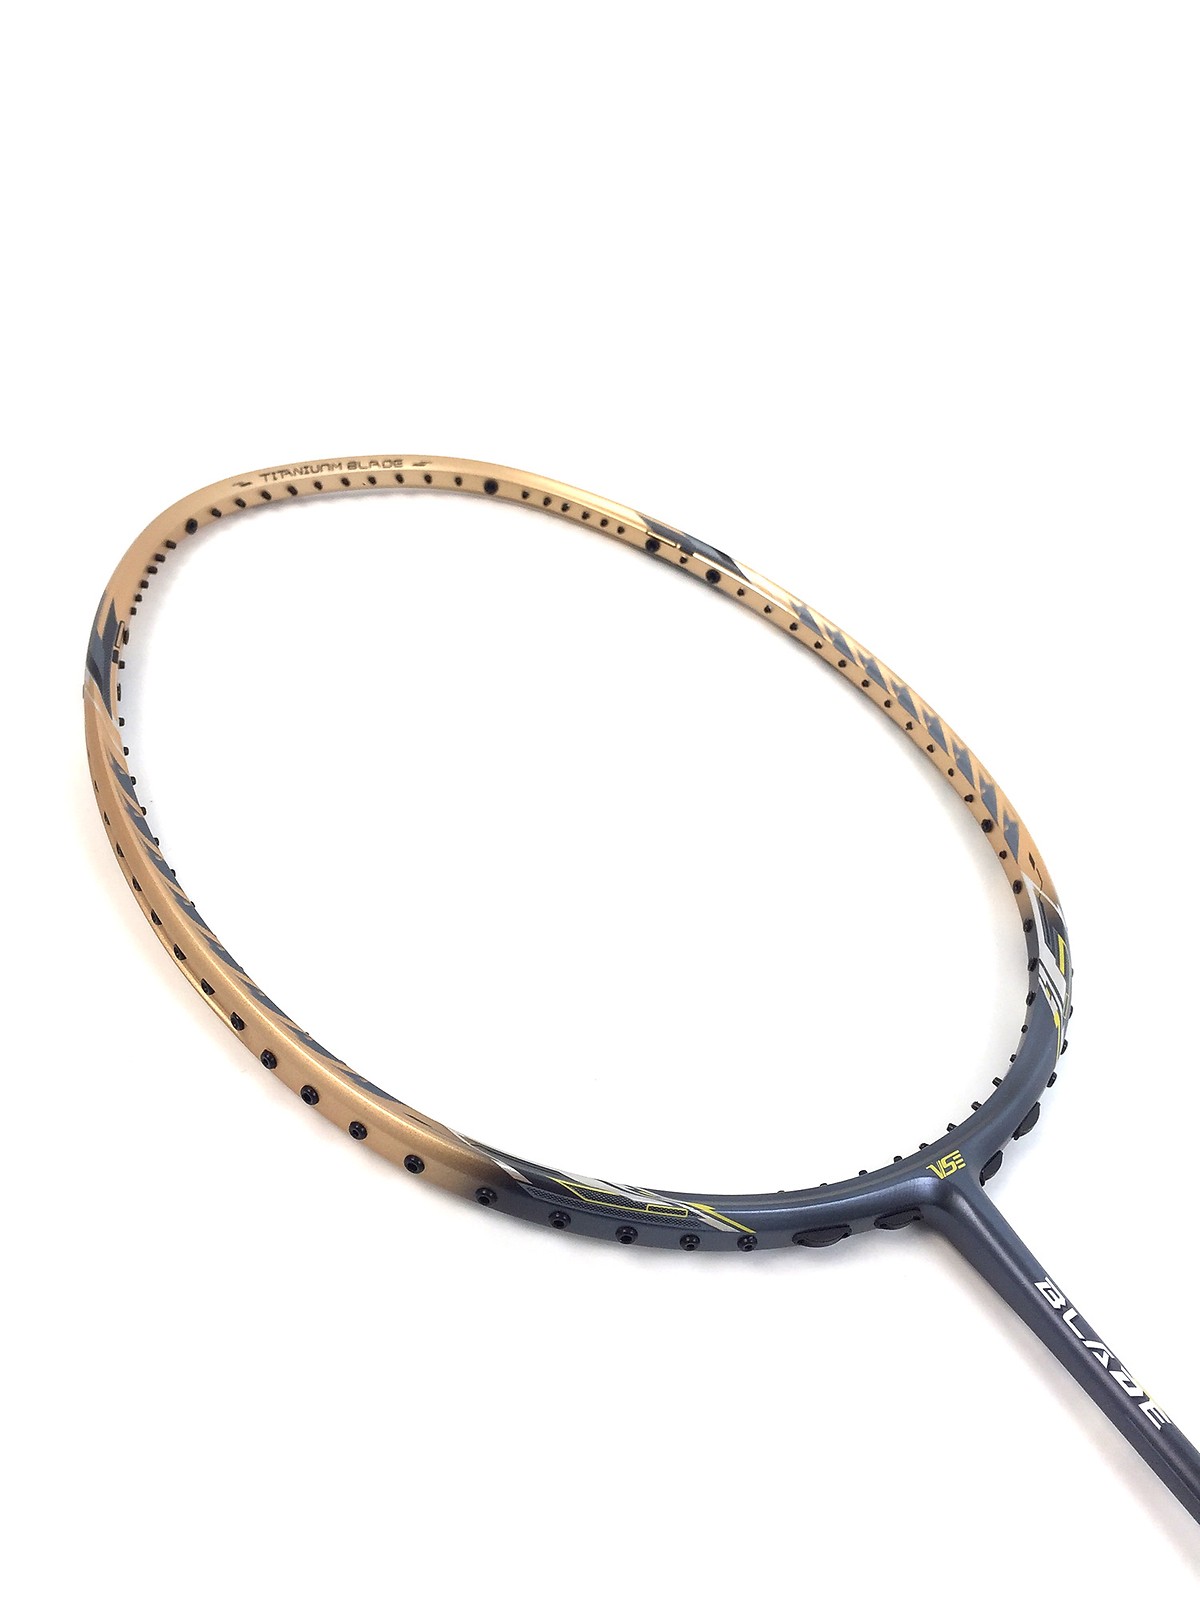 Vợt cầu lông VS BLADE 7100 (tặng kèm dây đan vợt TAAN+ Quấn cán vợt)